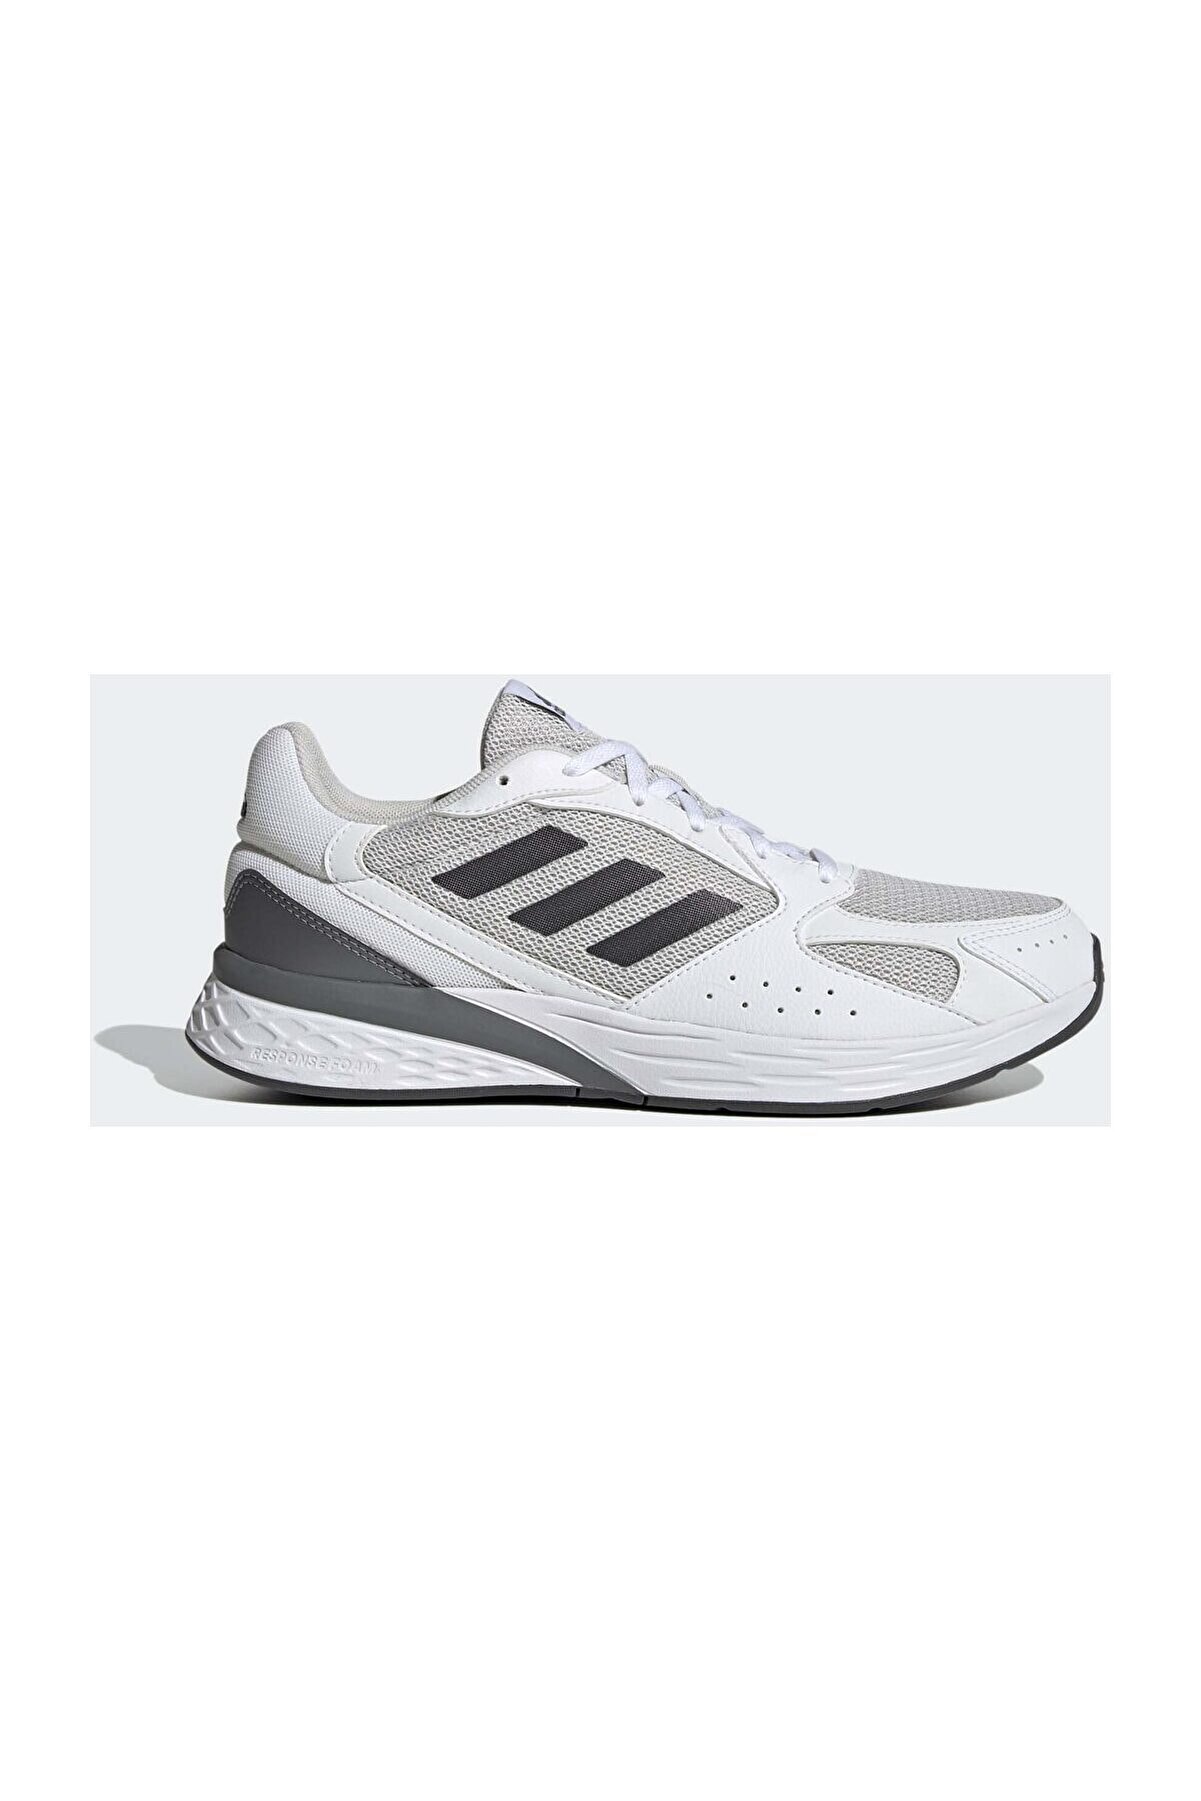 adidas Erkek Koşu Ayakkabısı Gv7130